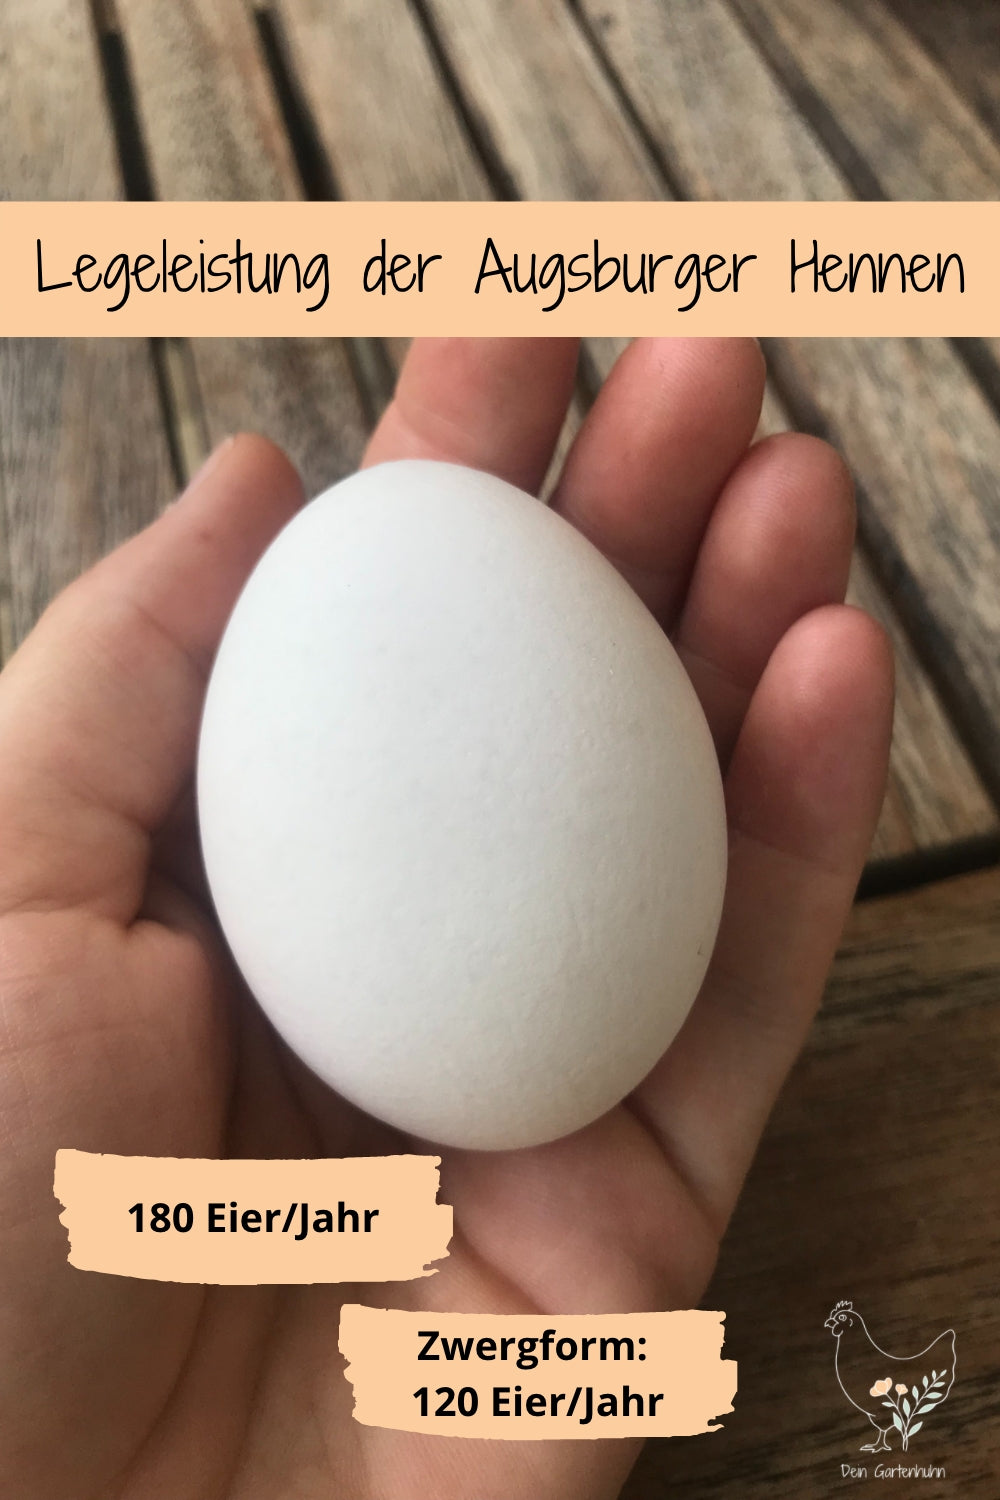 Abgebildet ist ein weißes Ei einer Augsburger Henne.